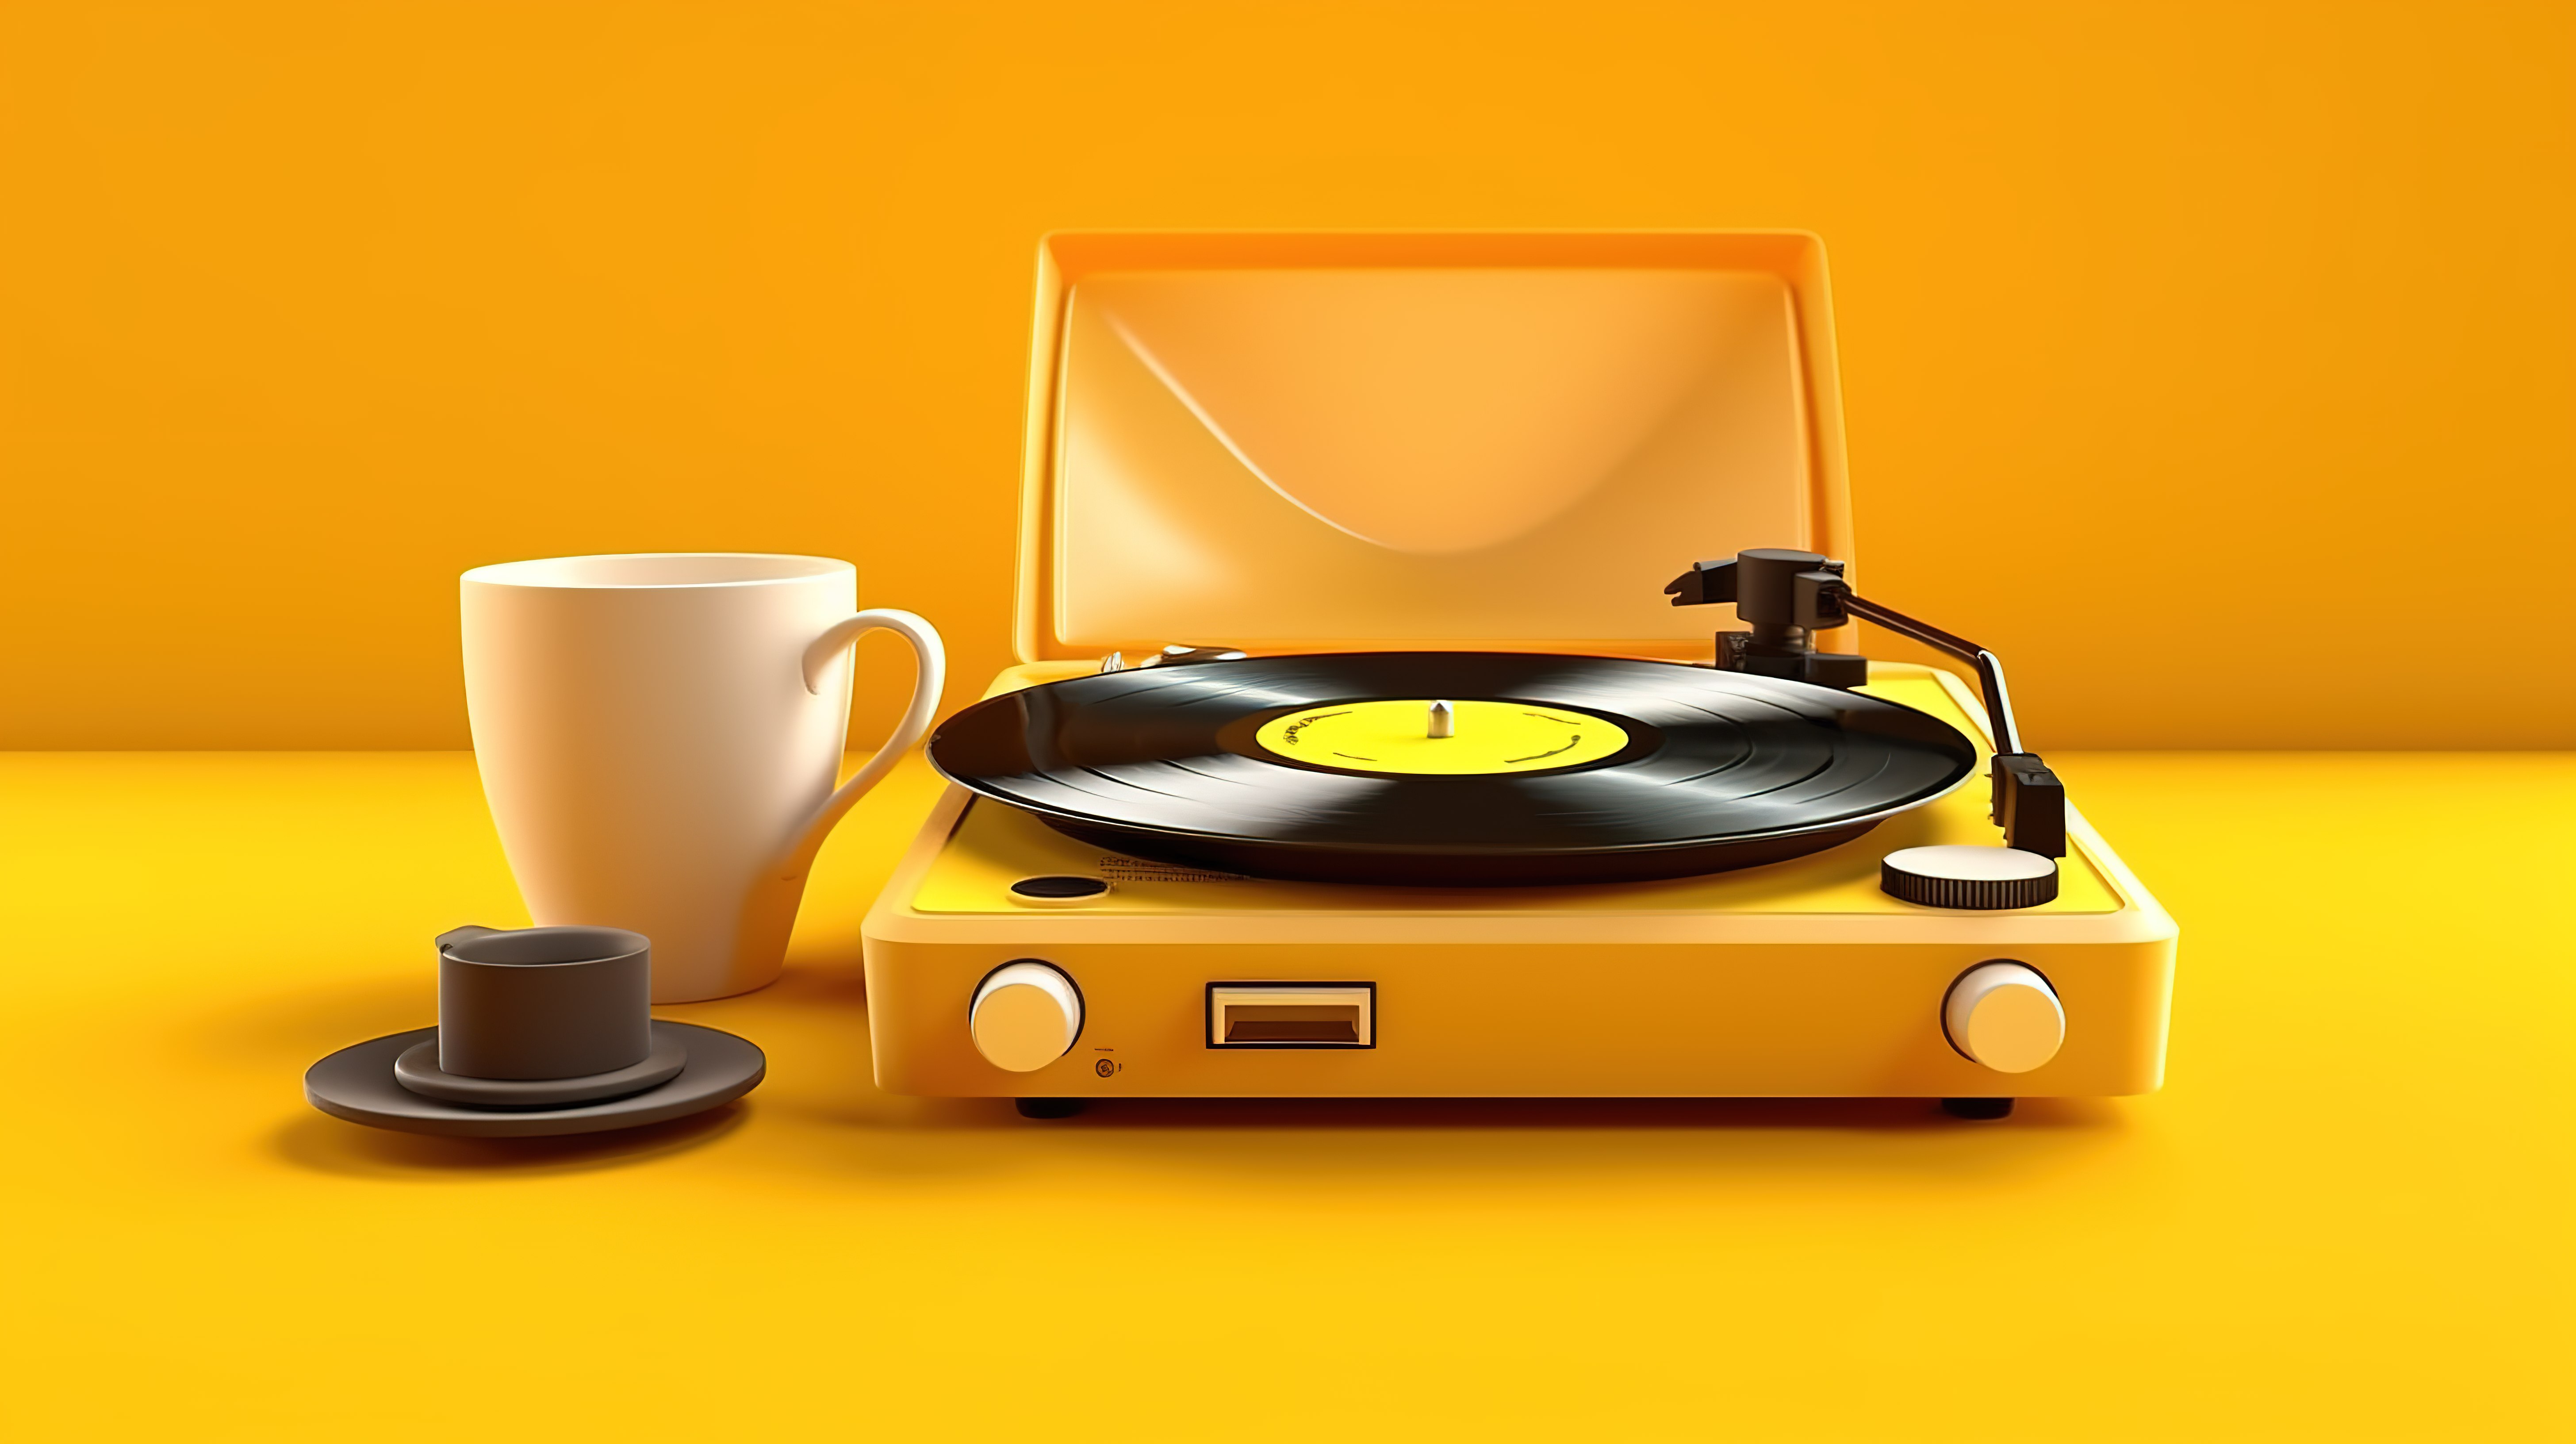 享受专业 DJ 转盘耳机和咖啡杯在充满活力的黄色背景上的声音 3D 渲染图片